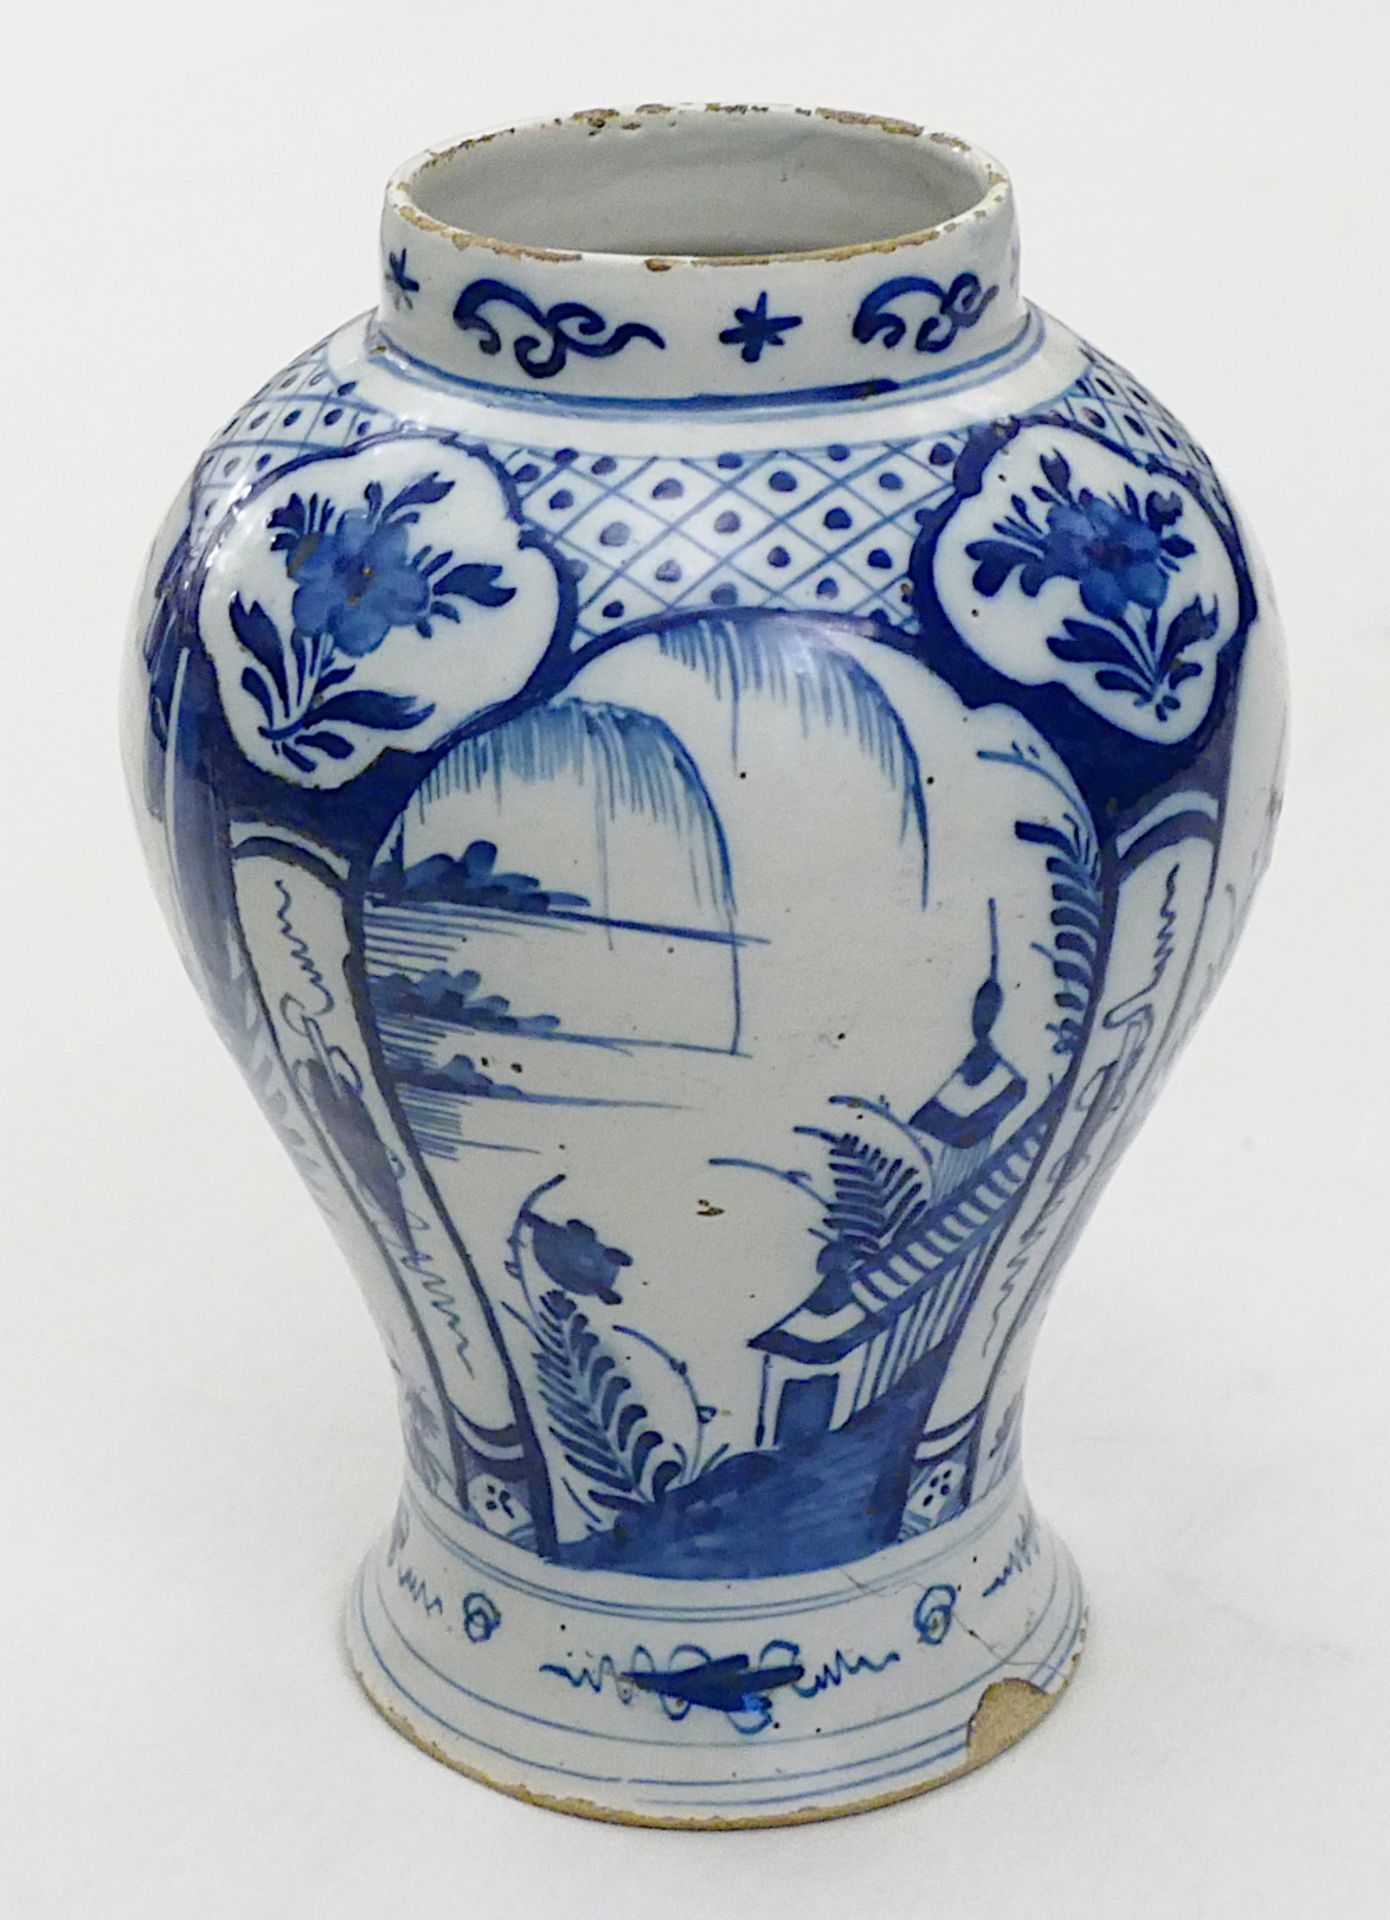 1 Balustervase wohl China 19. Jh., Keramik mit Unterglasur-Blaumalerei "Frauen- und Landschaftsmotiv